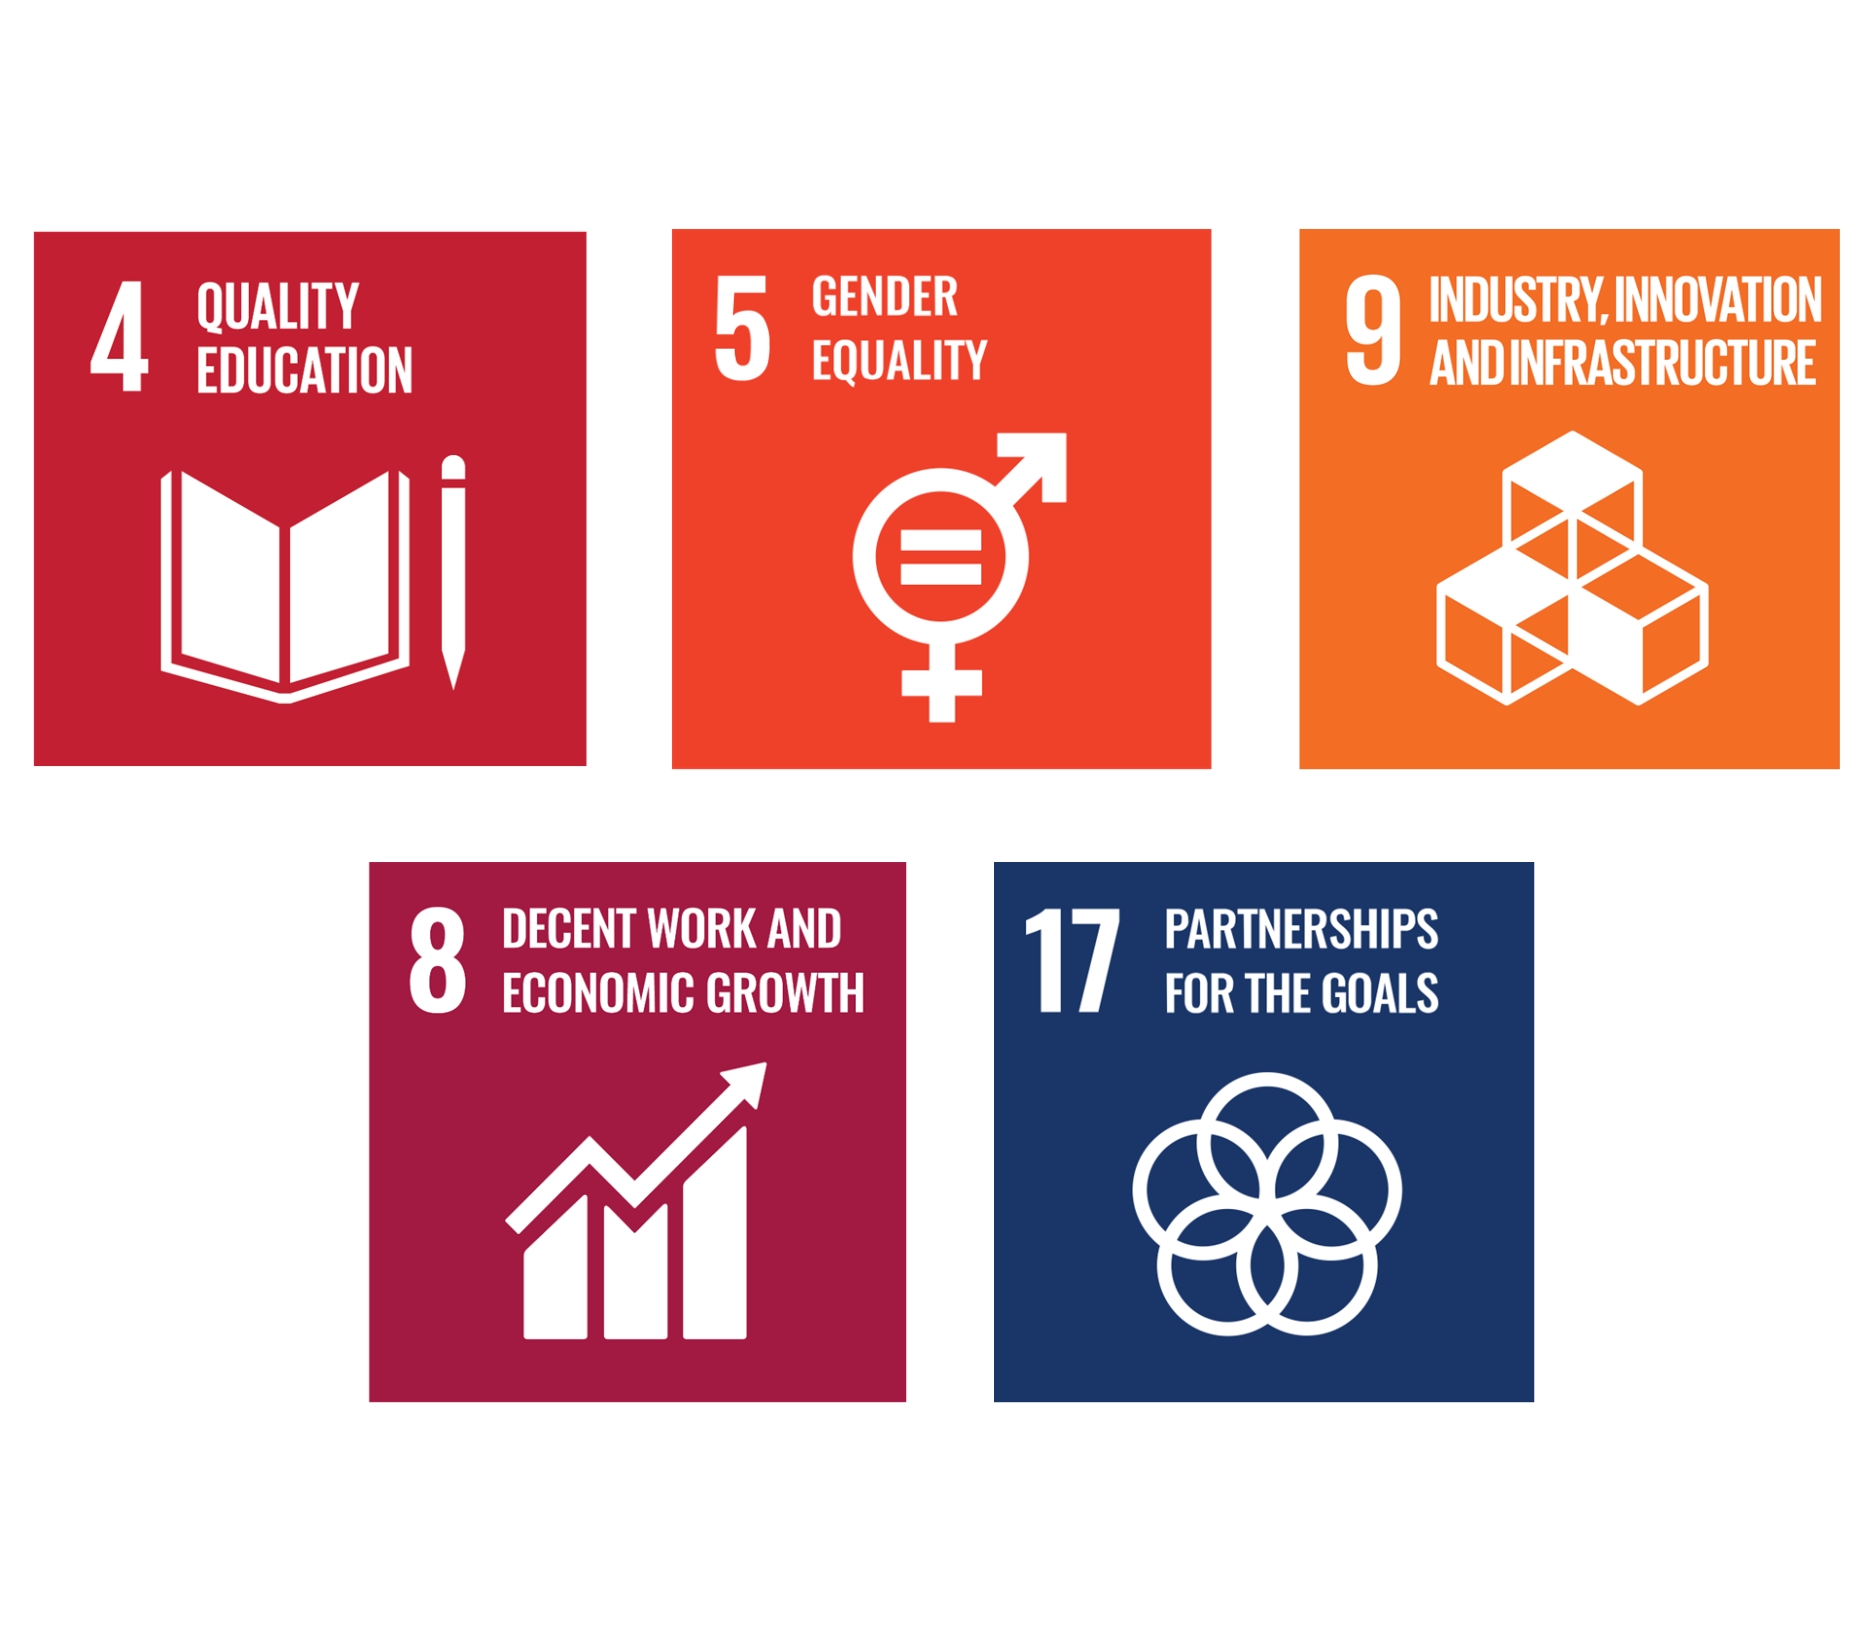 SDG's Goal